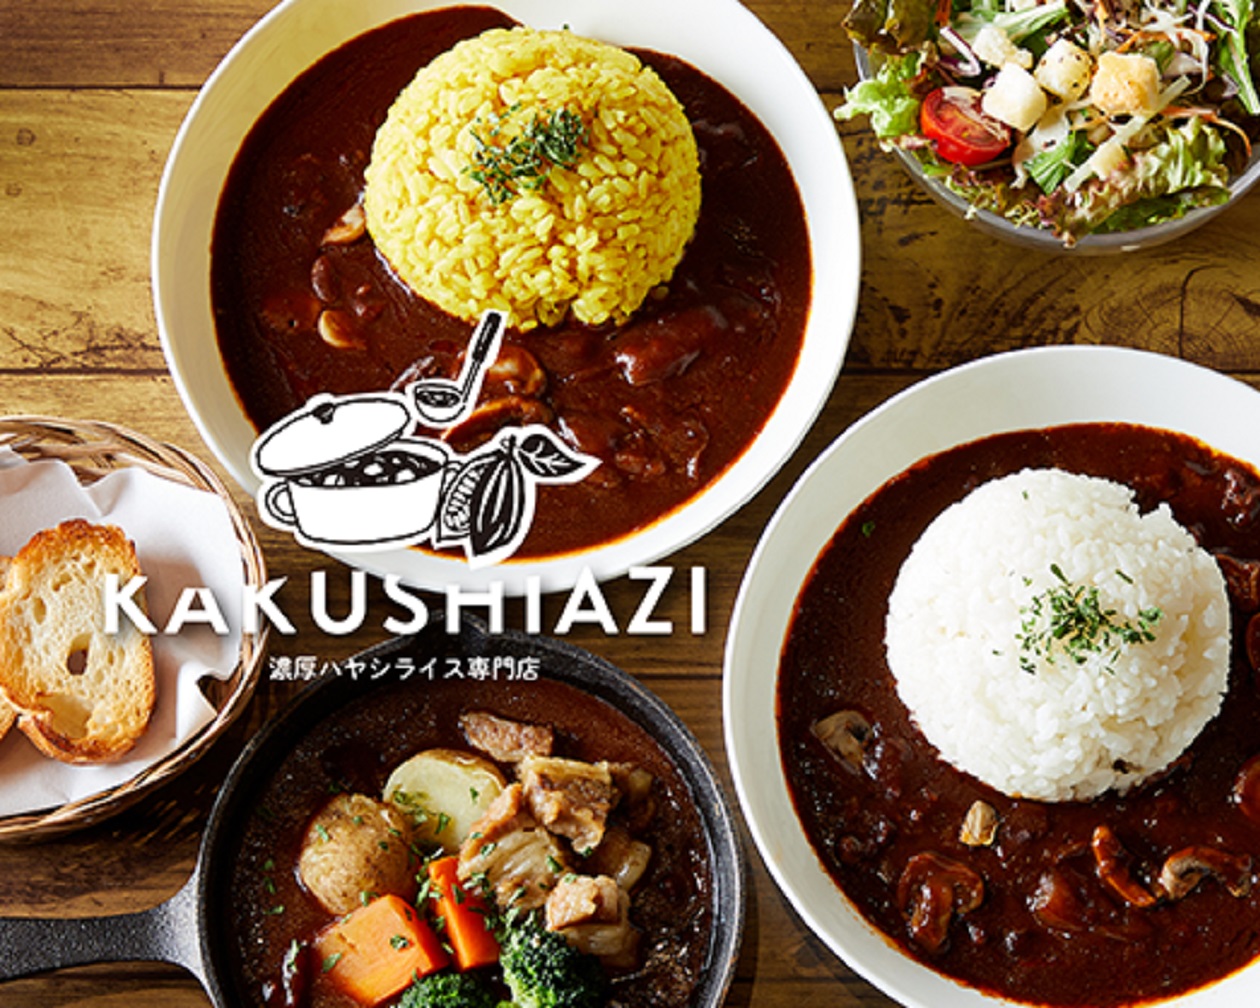 濃厚ハヤシライス「KAKUSHIAZI」- hayashi rice - ARM’S Delistation「アームスデリステーション」